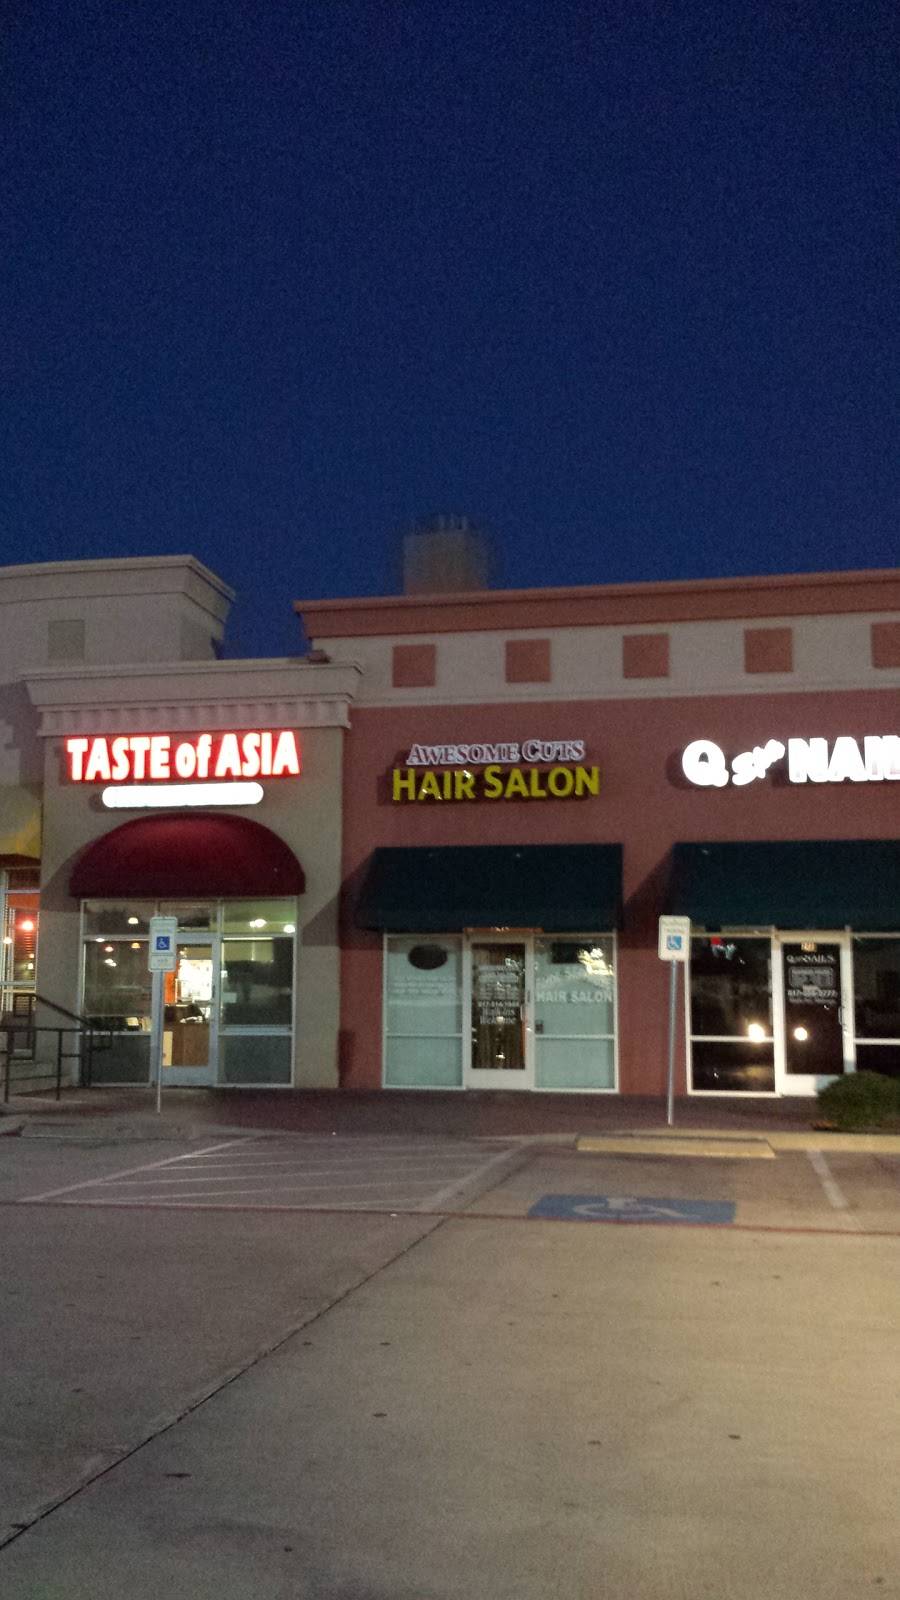 Awesome Cuts Hair Salon | 7420 N Beach St # 242, Fort Worth, TX 76137 | Phone: (817) 514-1944